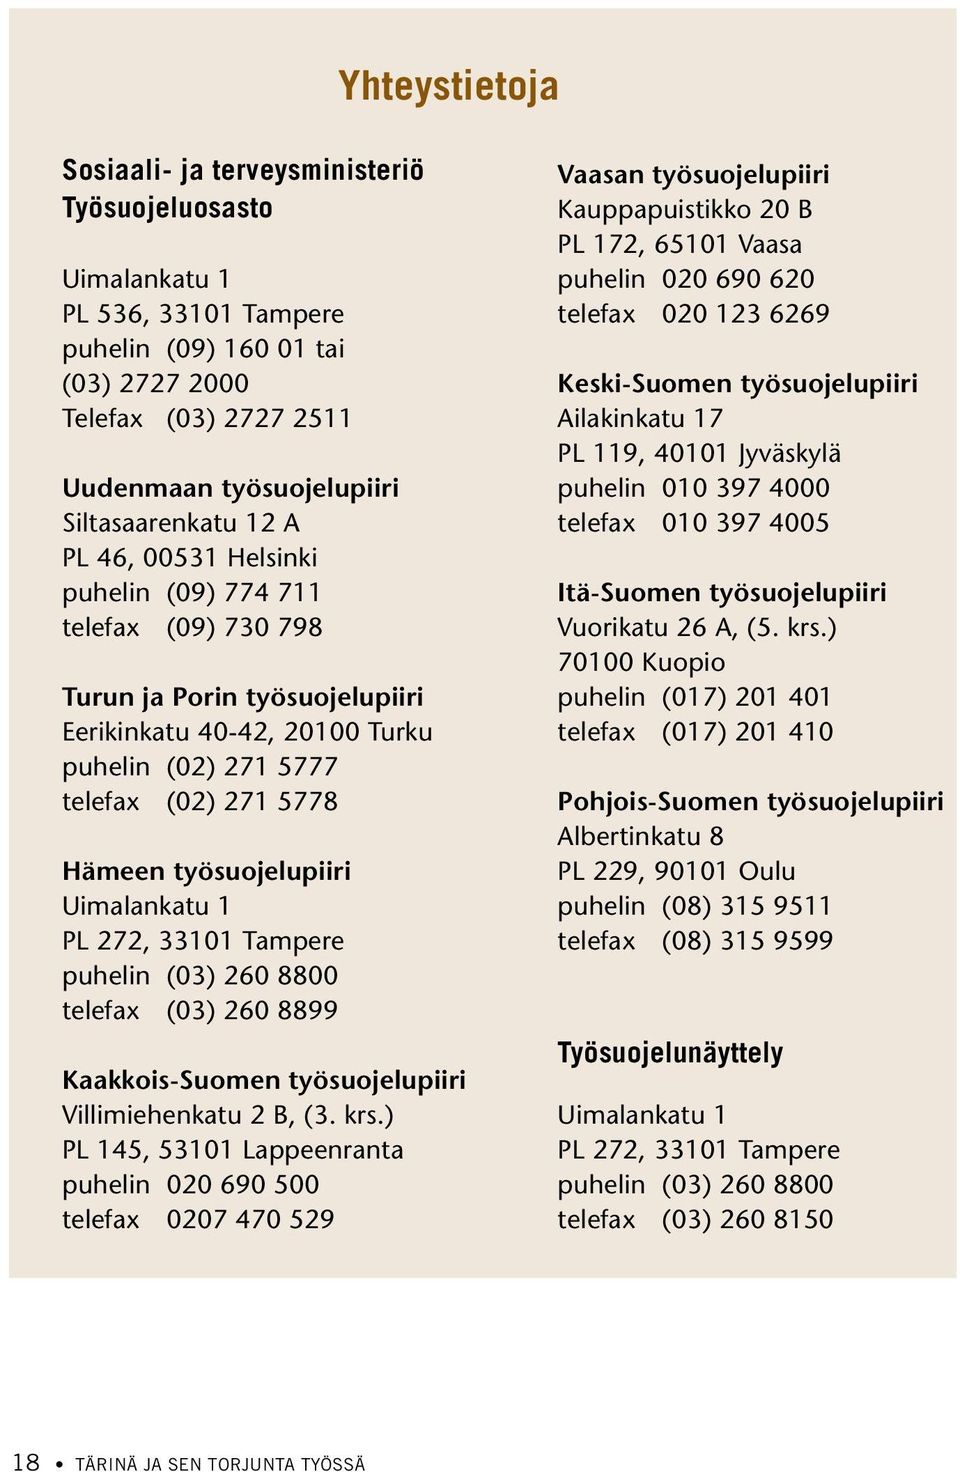 työsuojelupiiri Uimalankatu 1 PL 272, 33101 Tampere puhelin (03) 260 8800 telefax (03) 260 8899 Kaakkois-Suomen työsuojelupiiri Villimiehenkatu 2 B, (3. krs.